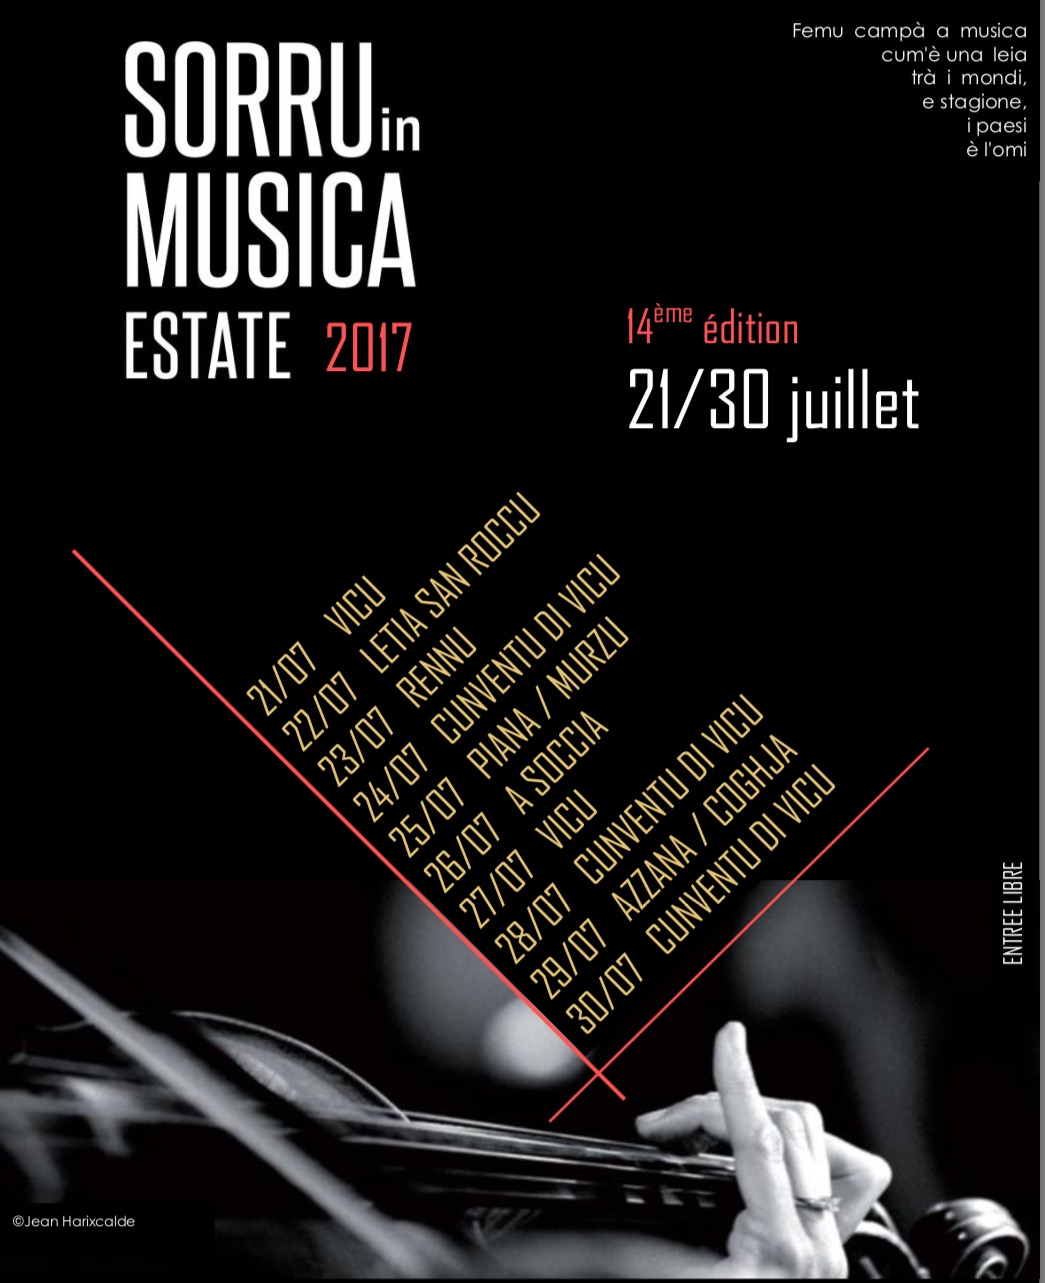 Sorru in Musica Estate 2017